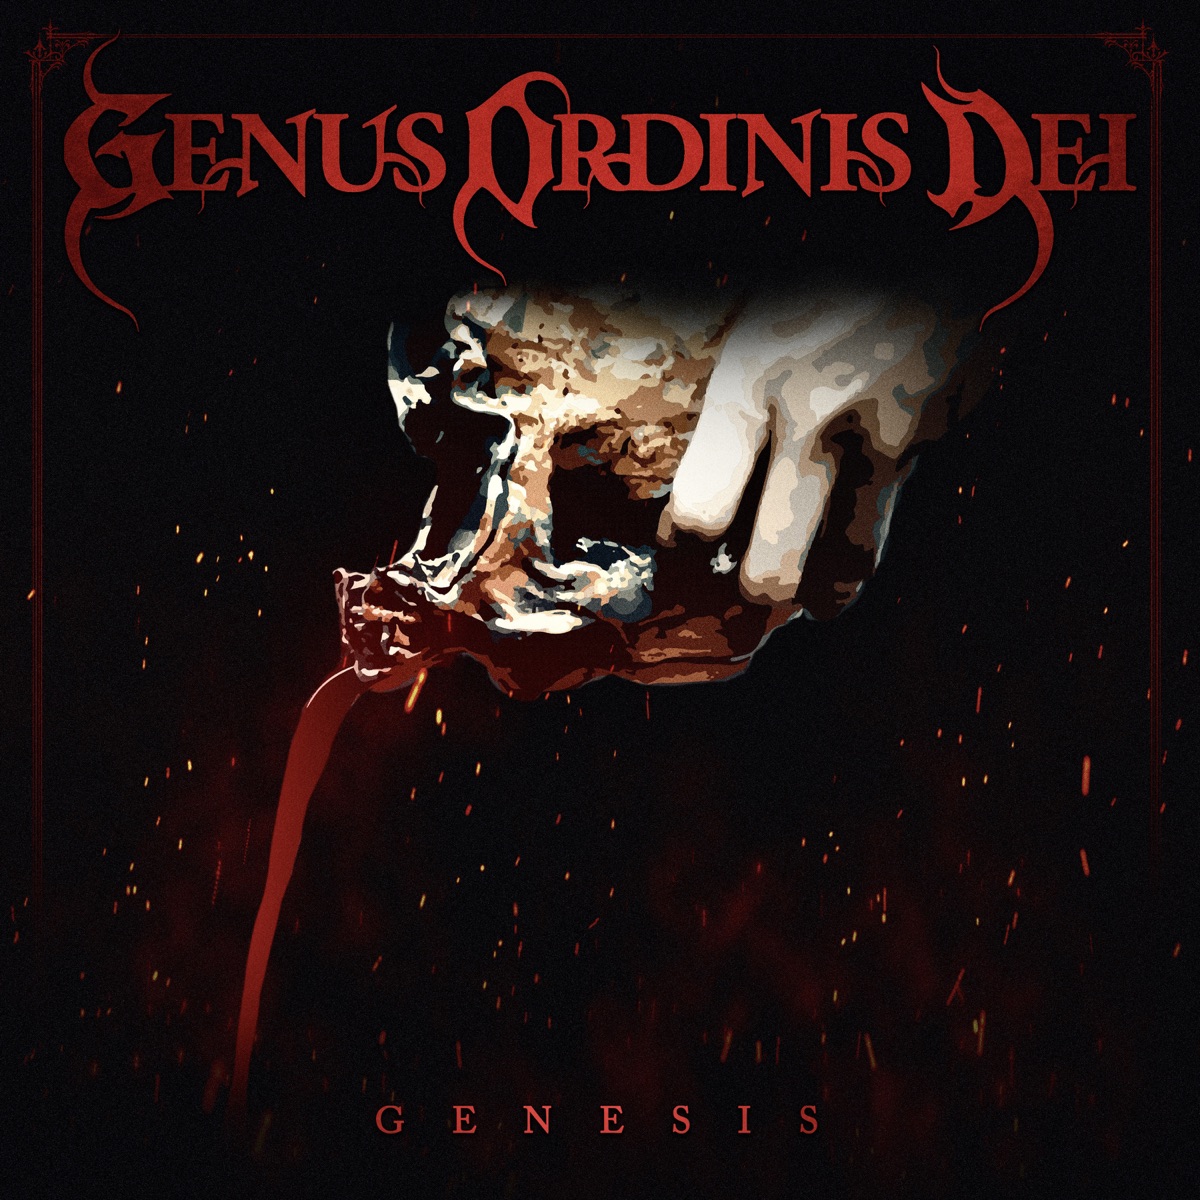 GENUS ORDINIS DEI - The Beginning